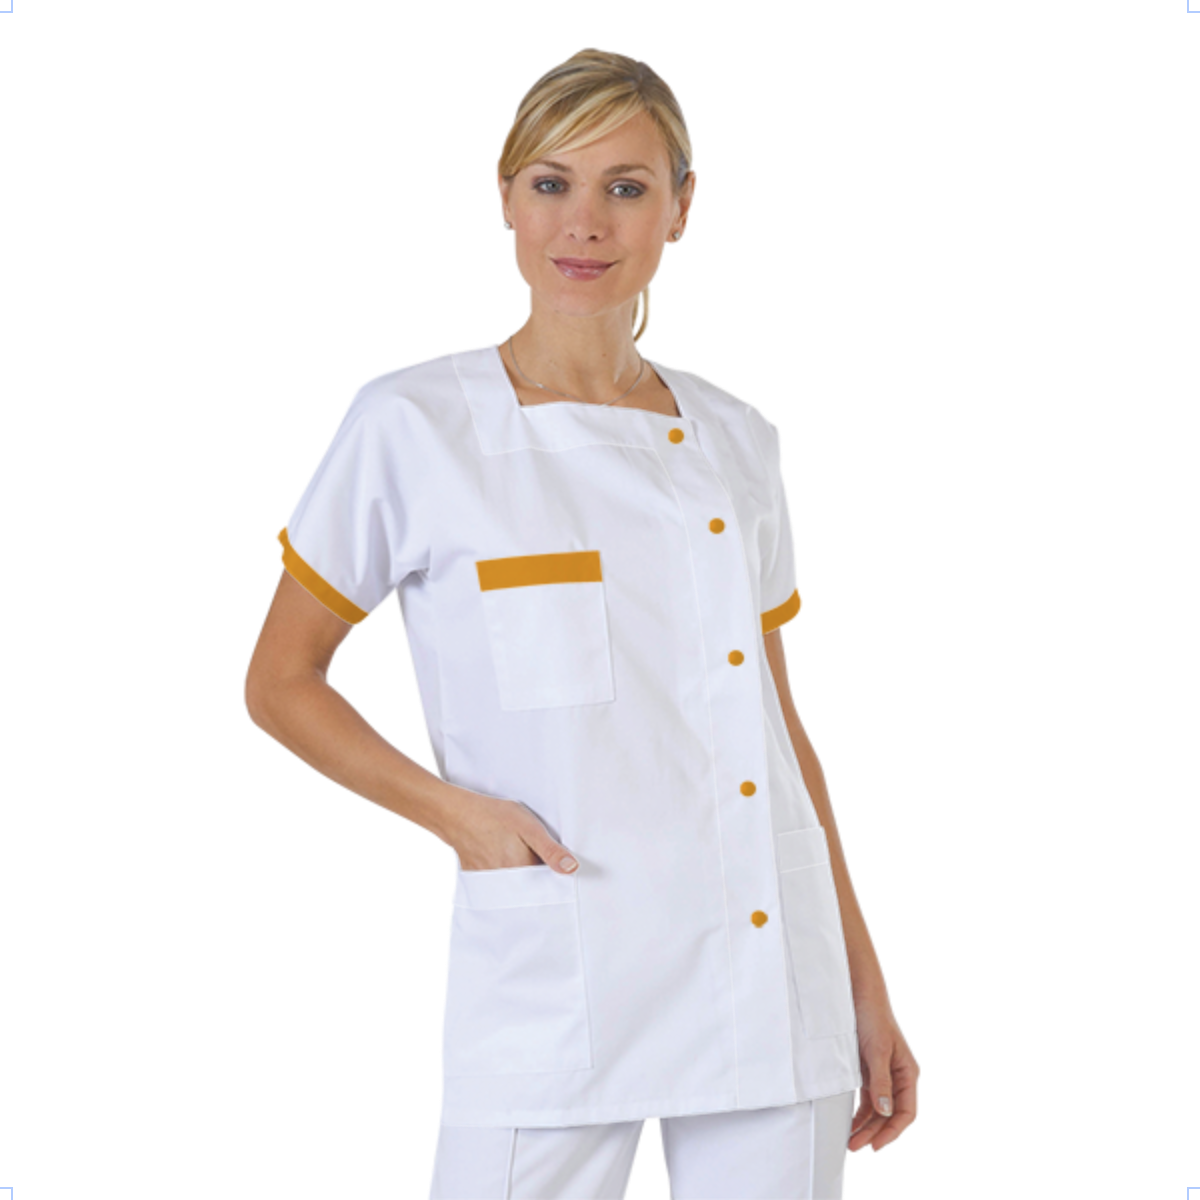 blouse-medicale-col-carre-a-personnaliser acheté - par Carine - le 02-01-2017